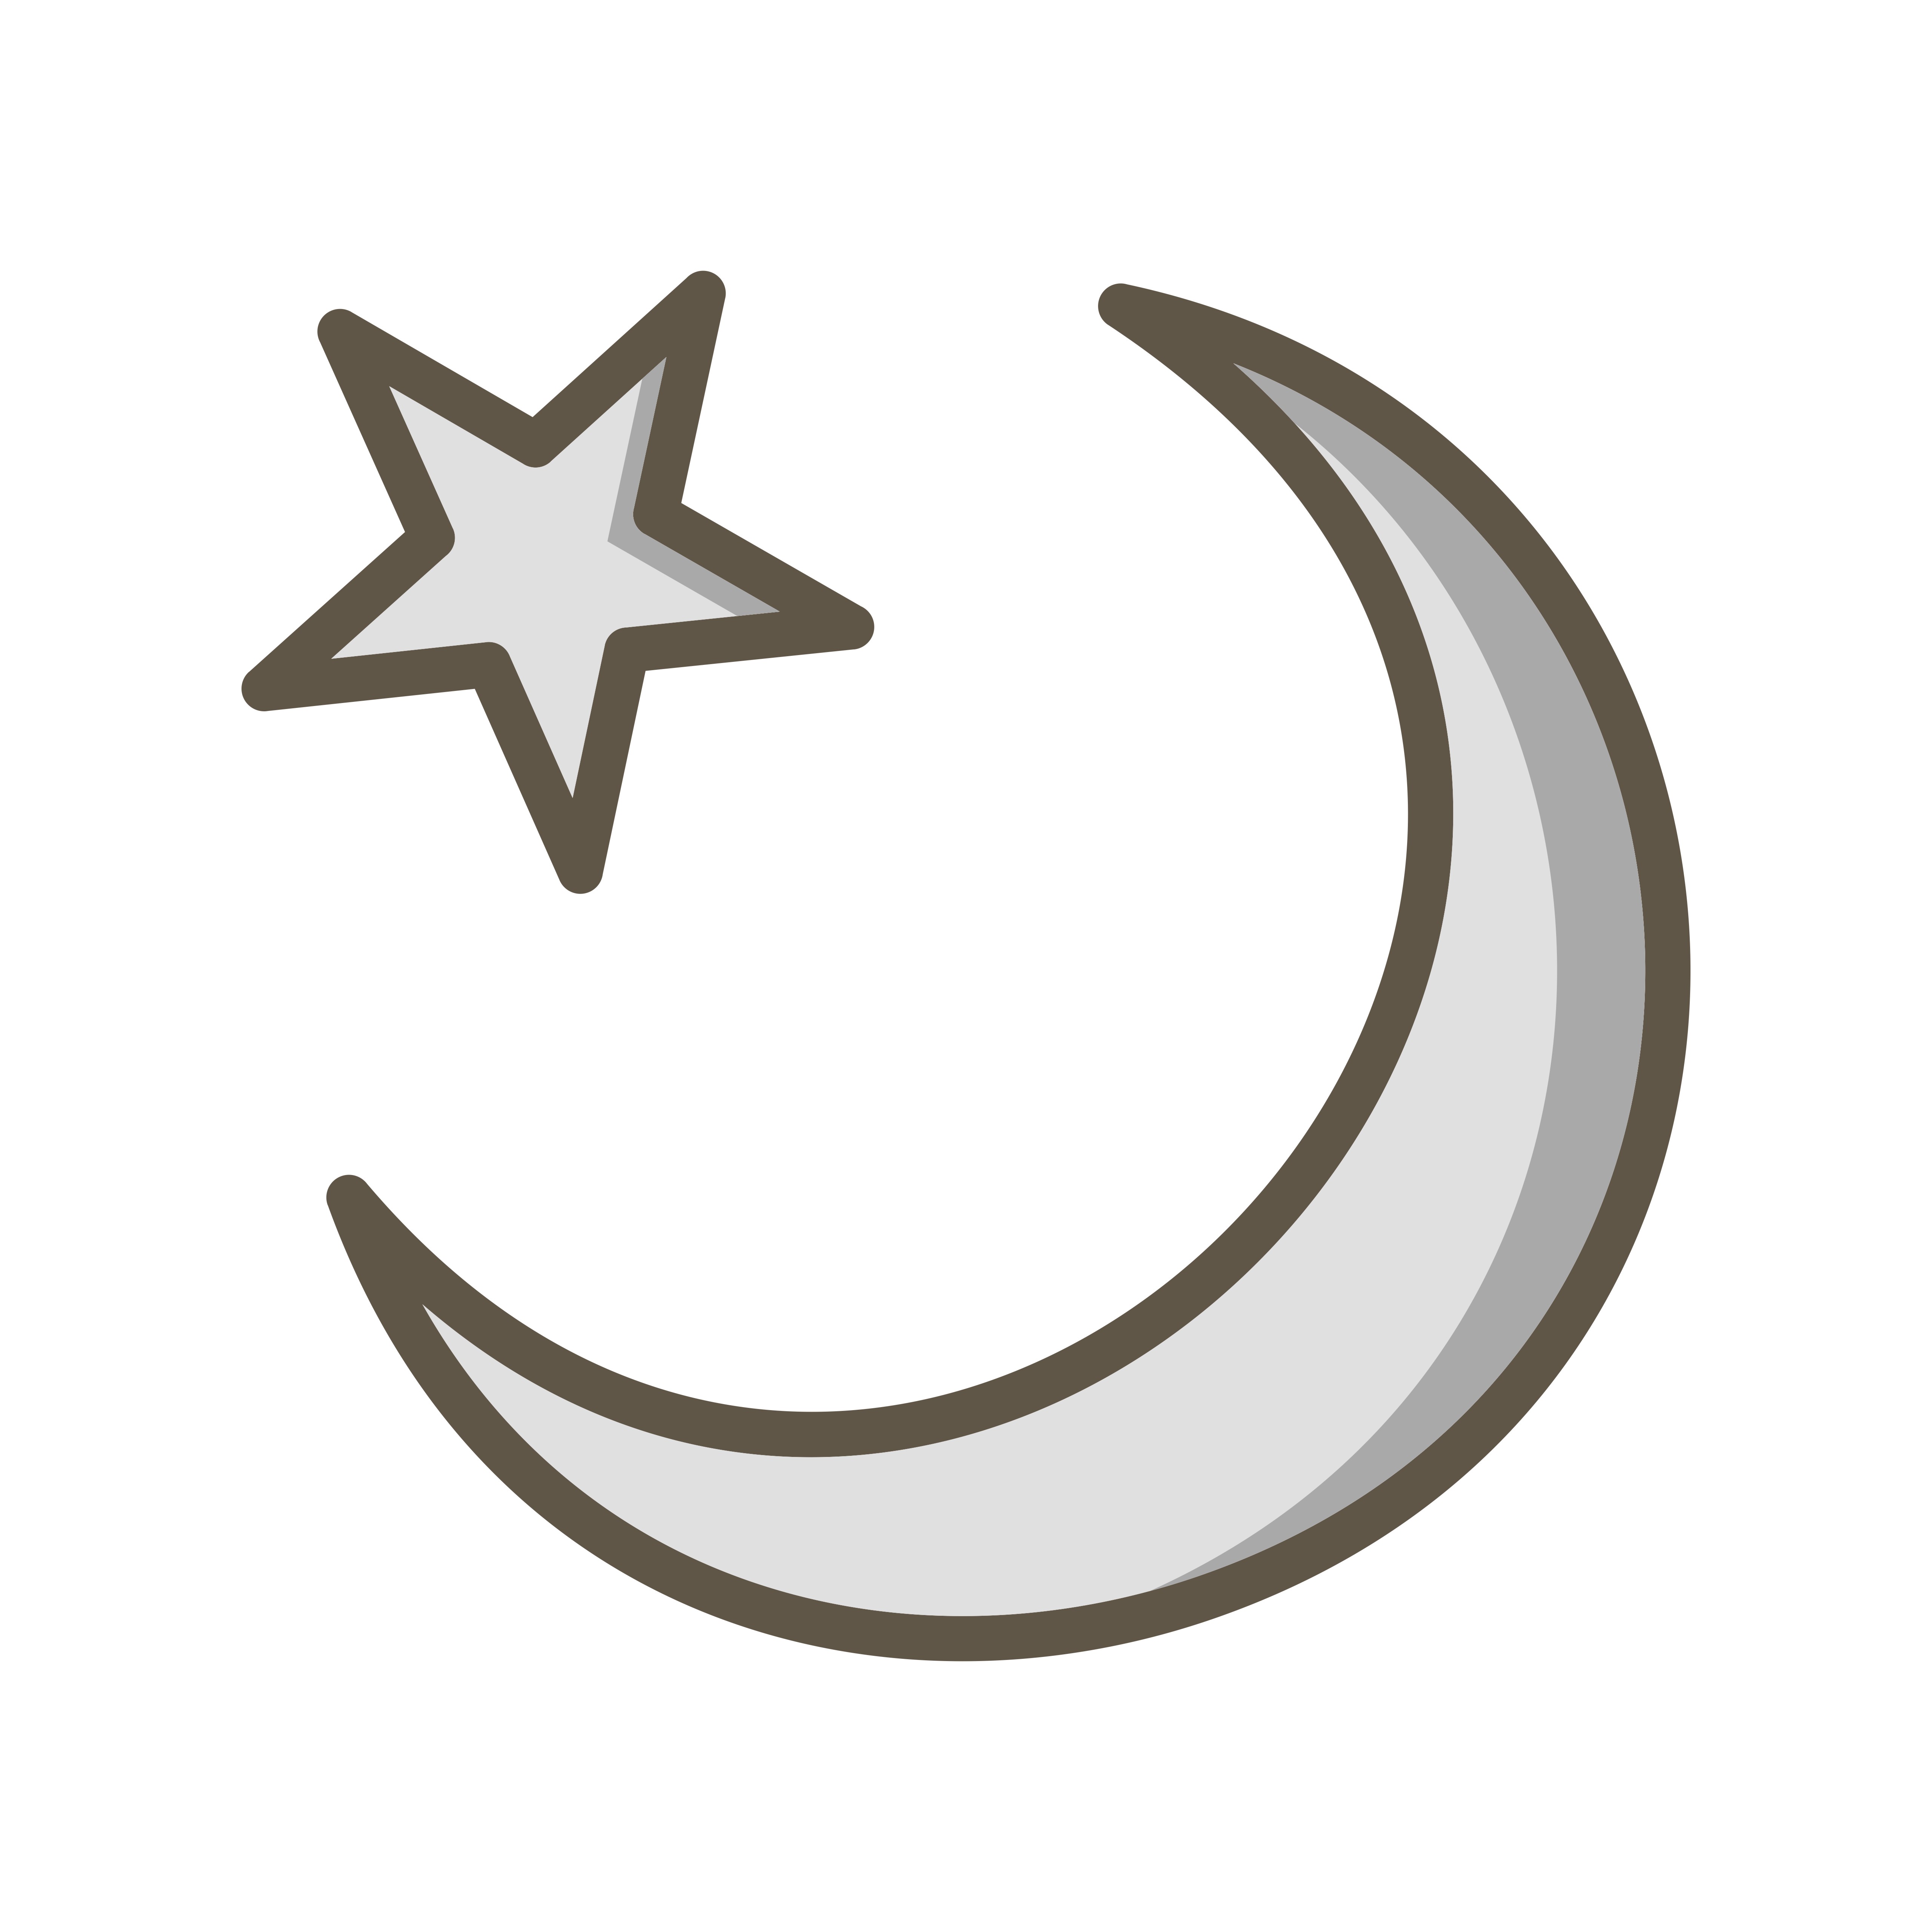 Download Crescent Moon Vector Icon 377152 Vector Art at Vecteezy